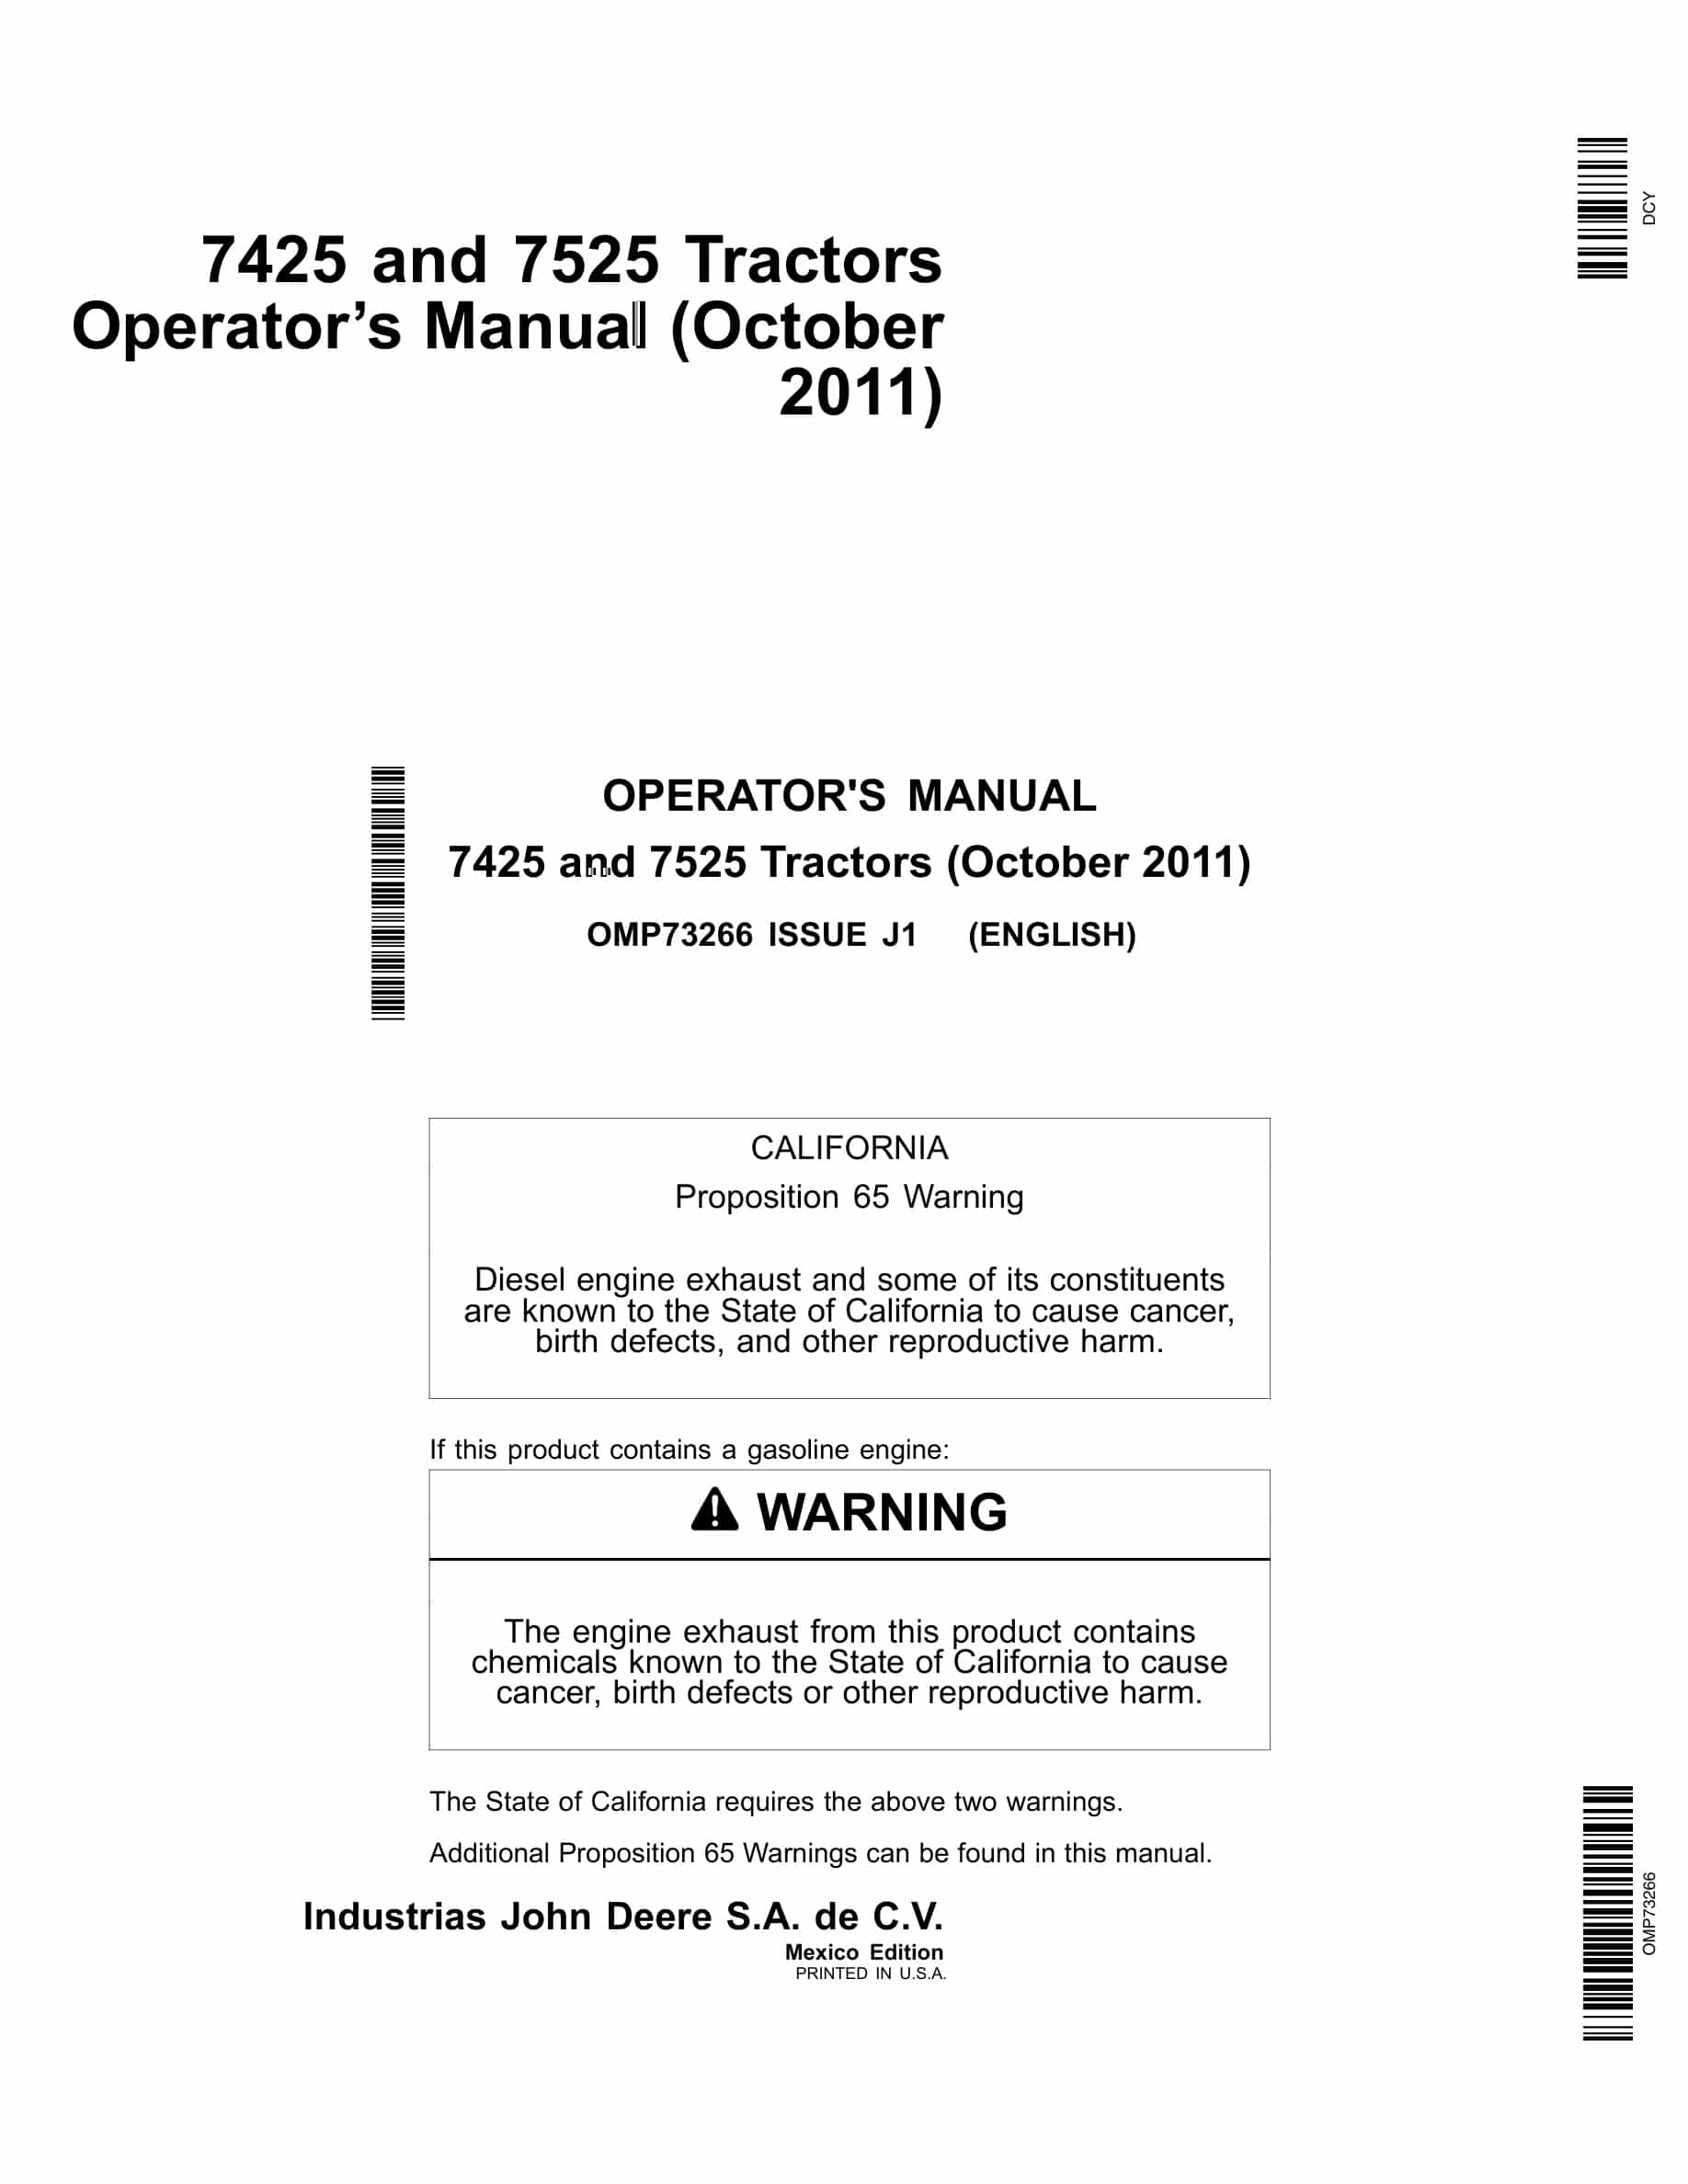 John Deere 7425 And 7525 Tractors Operator Manuals OMP73266-1